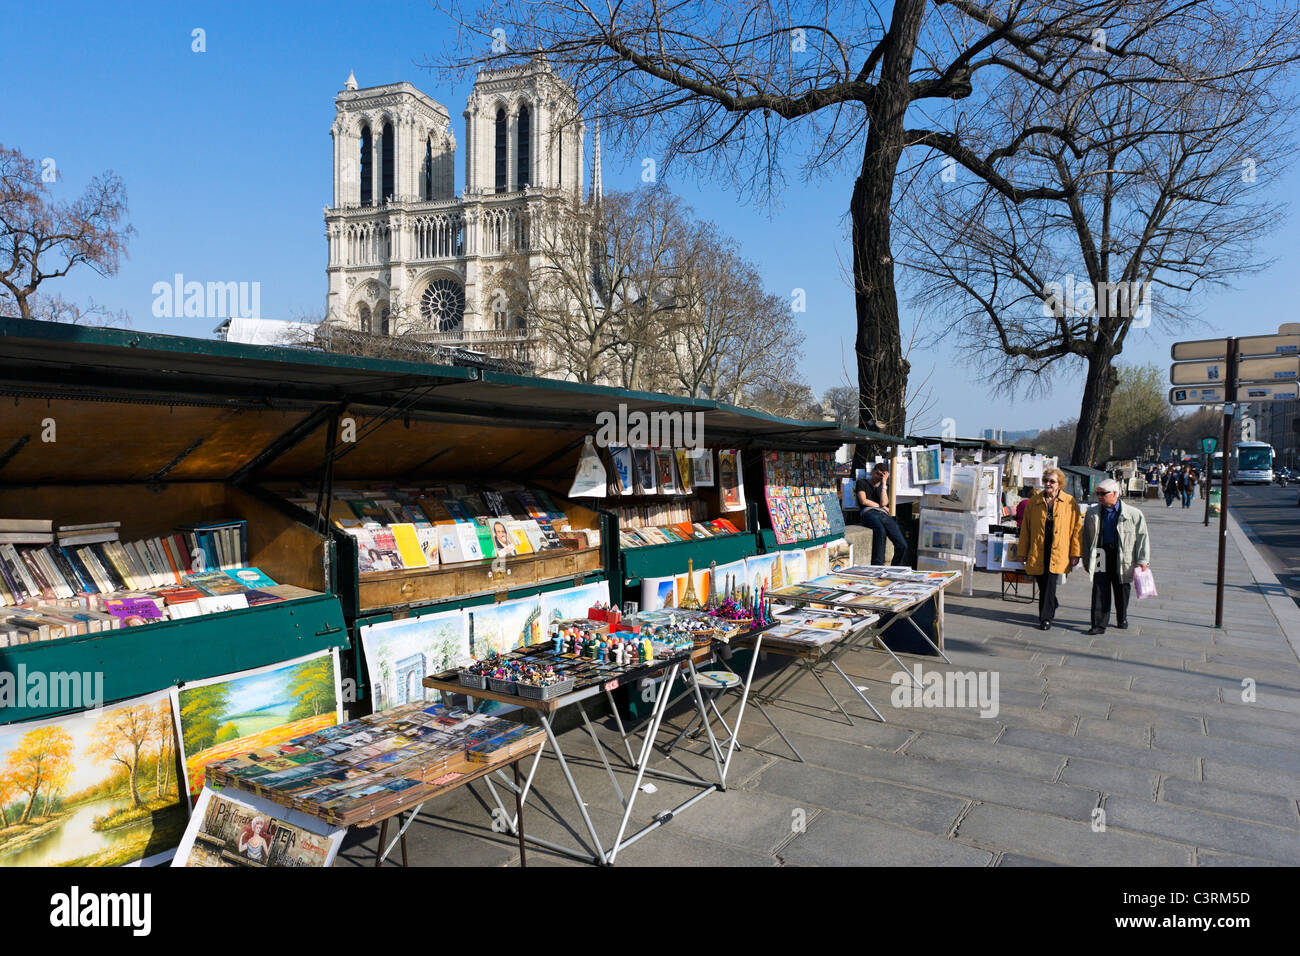 Les étals des libraires le long des berges de la Seine sur le quai Saint-Michel avec la Cathédrale Notre Dame derrière, Paris, France Banque D'Images